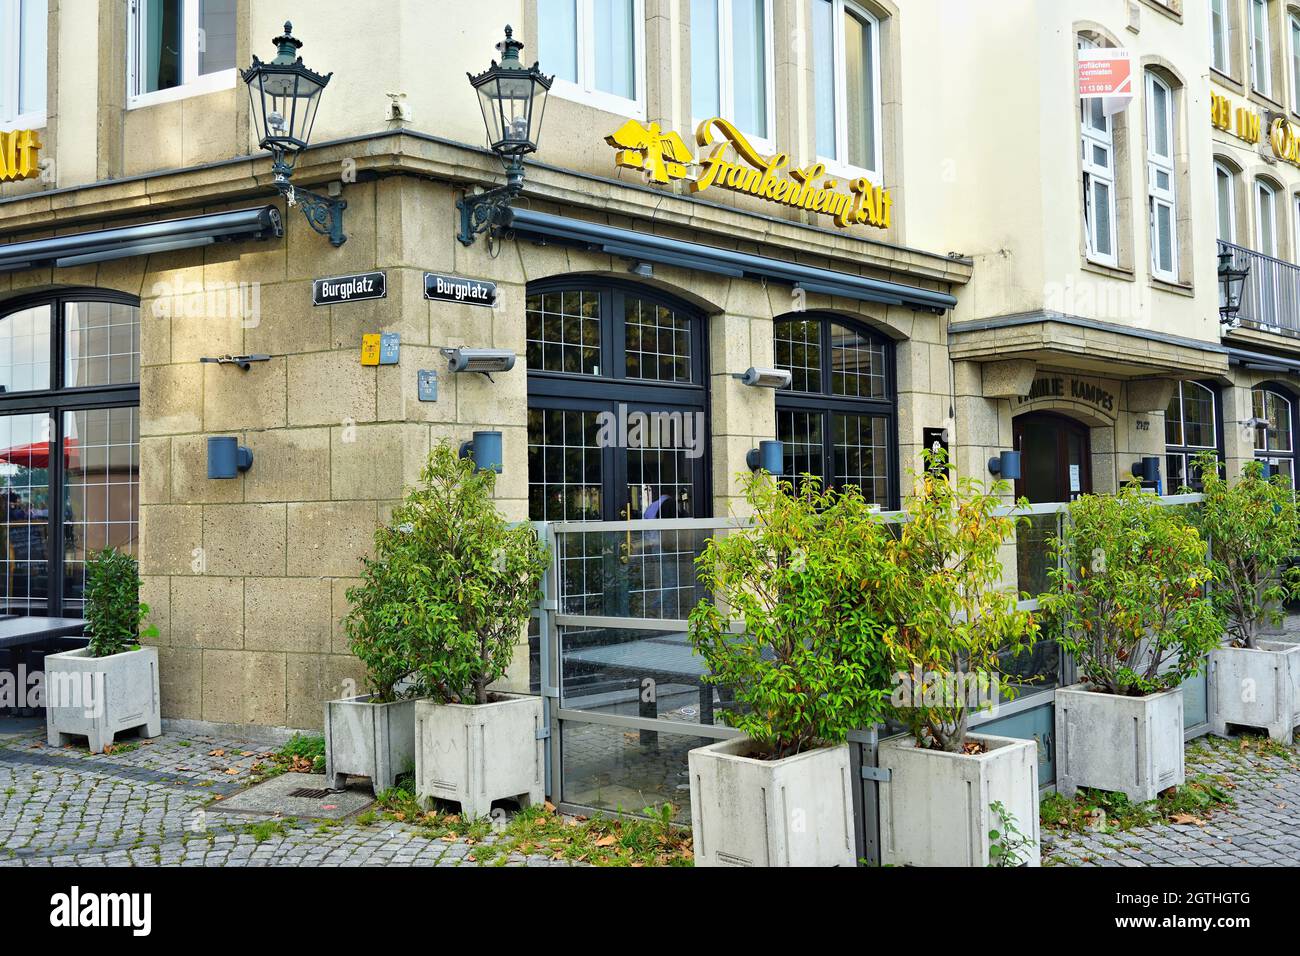 Extérieur du restaurant de brasserie à Burgplatz, dans la zone touristique populaire de la vieille ville, près du Rhin.'Frankenheim Alt' est une célèbre marque de bière locale. Banque D'Images